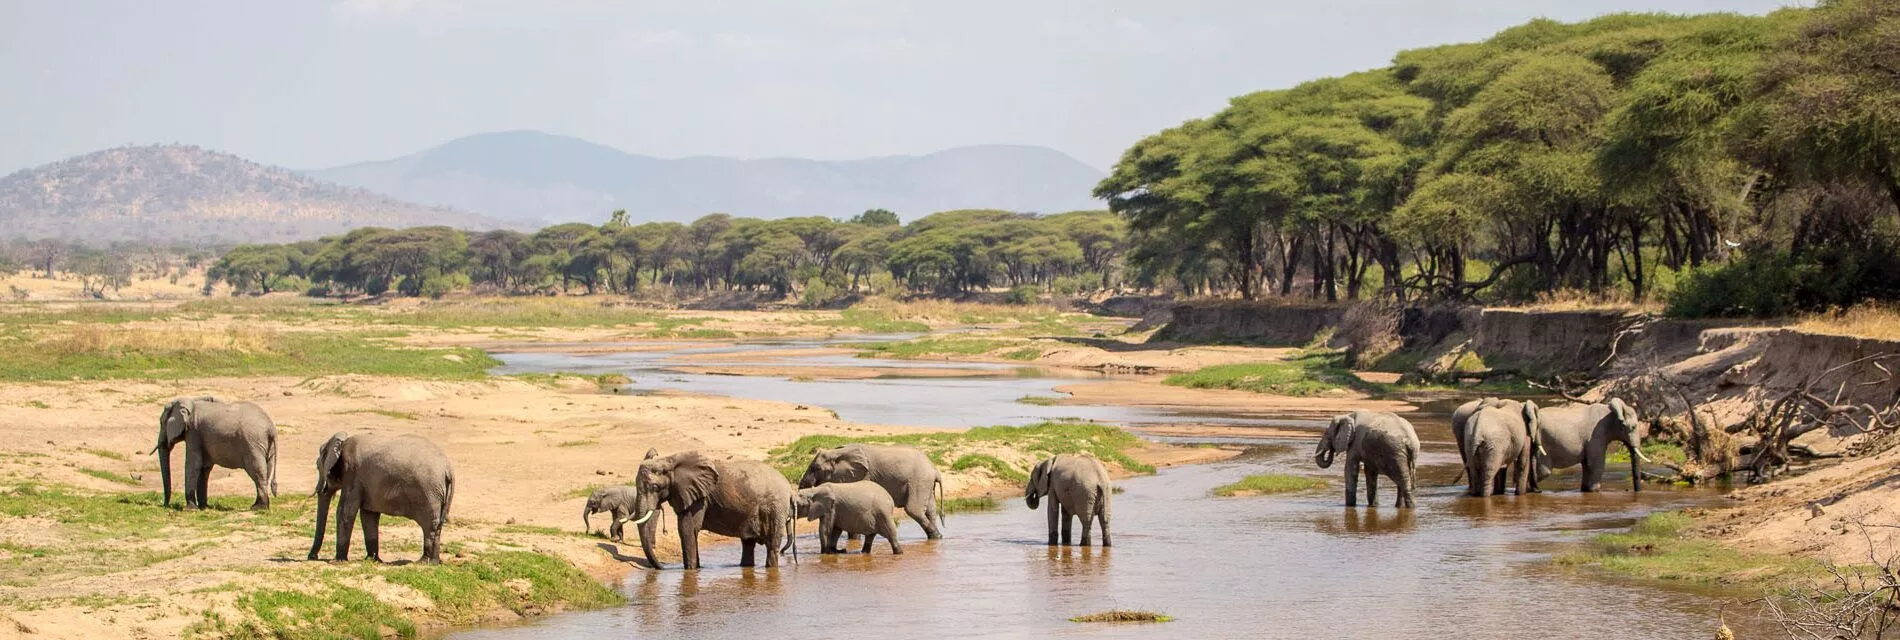 Elefanten im Ruaha Nationalpark in Tansania